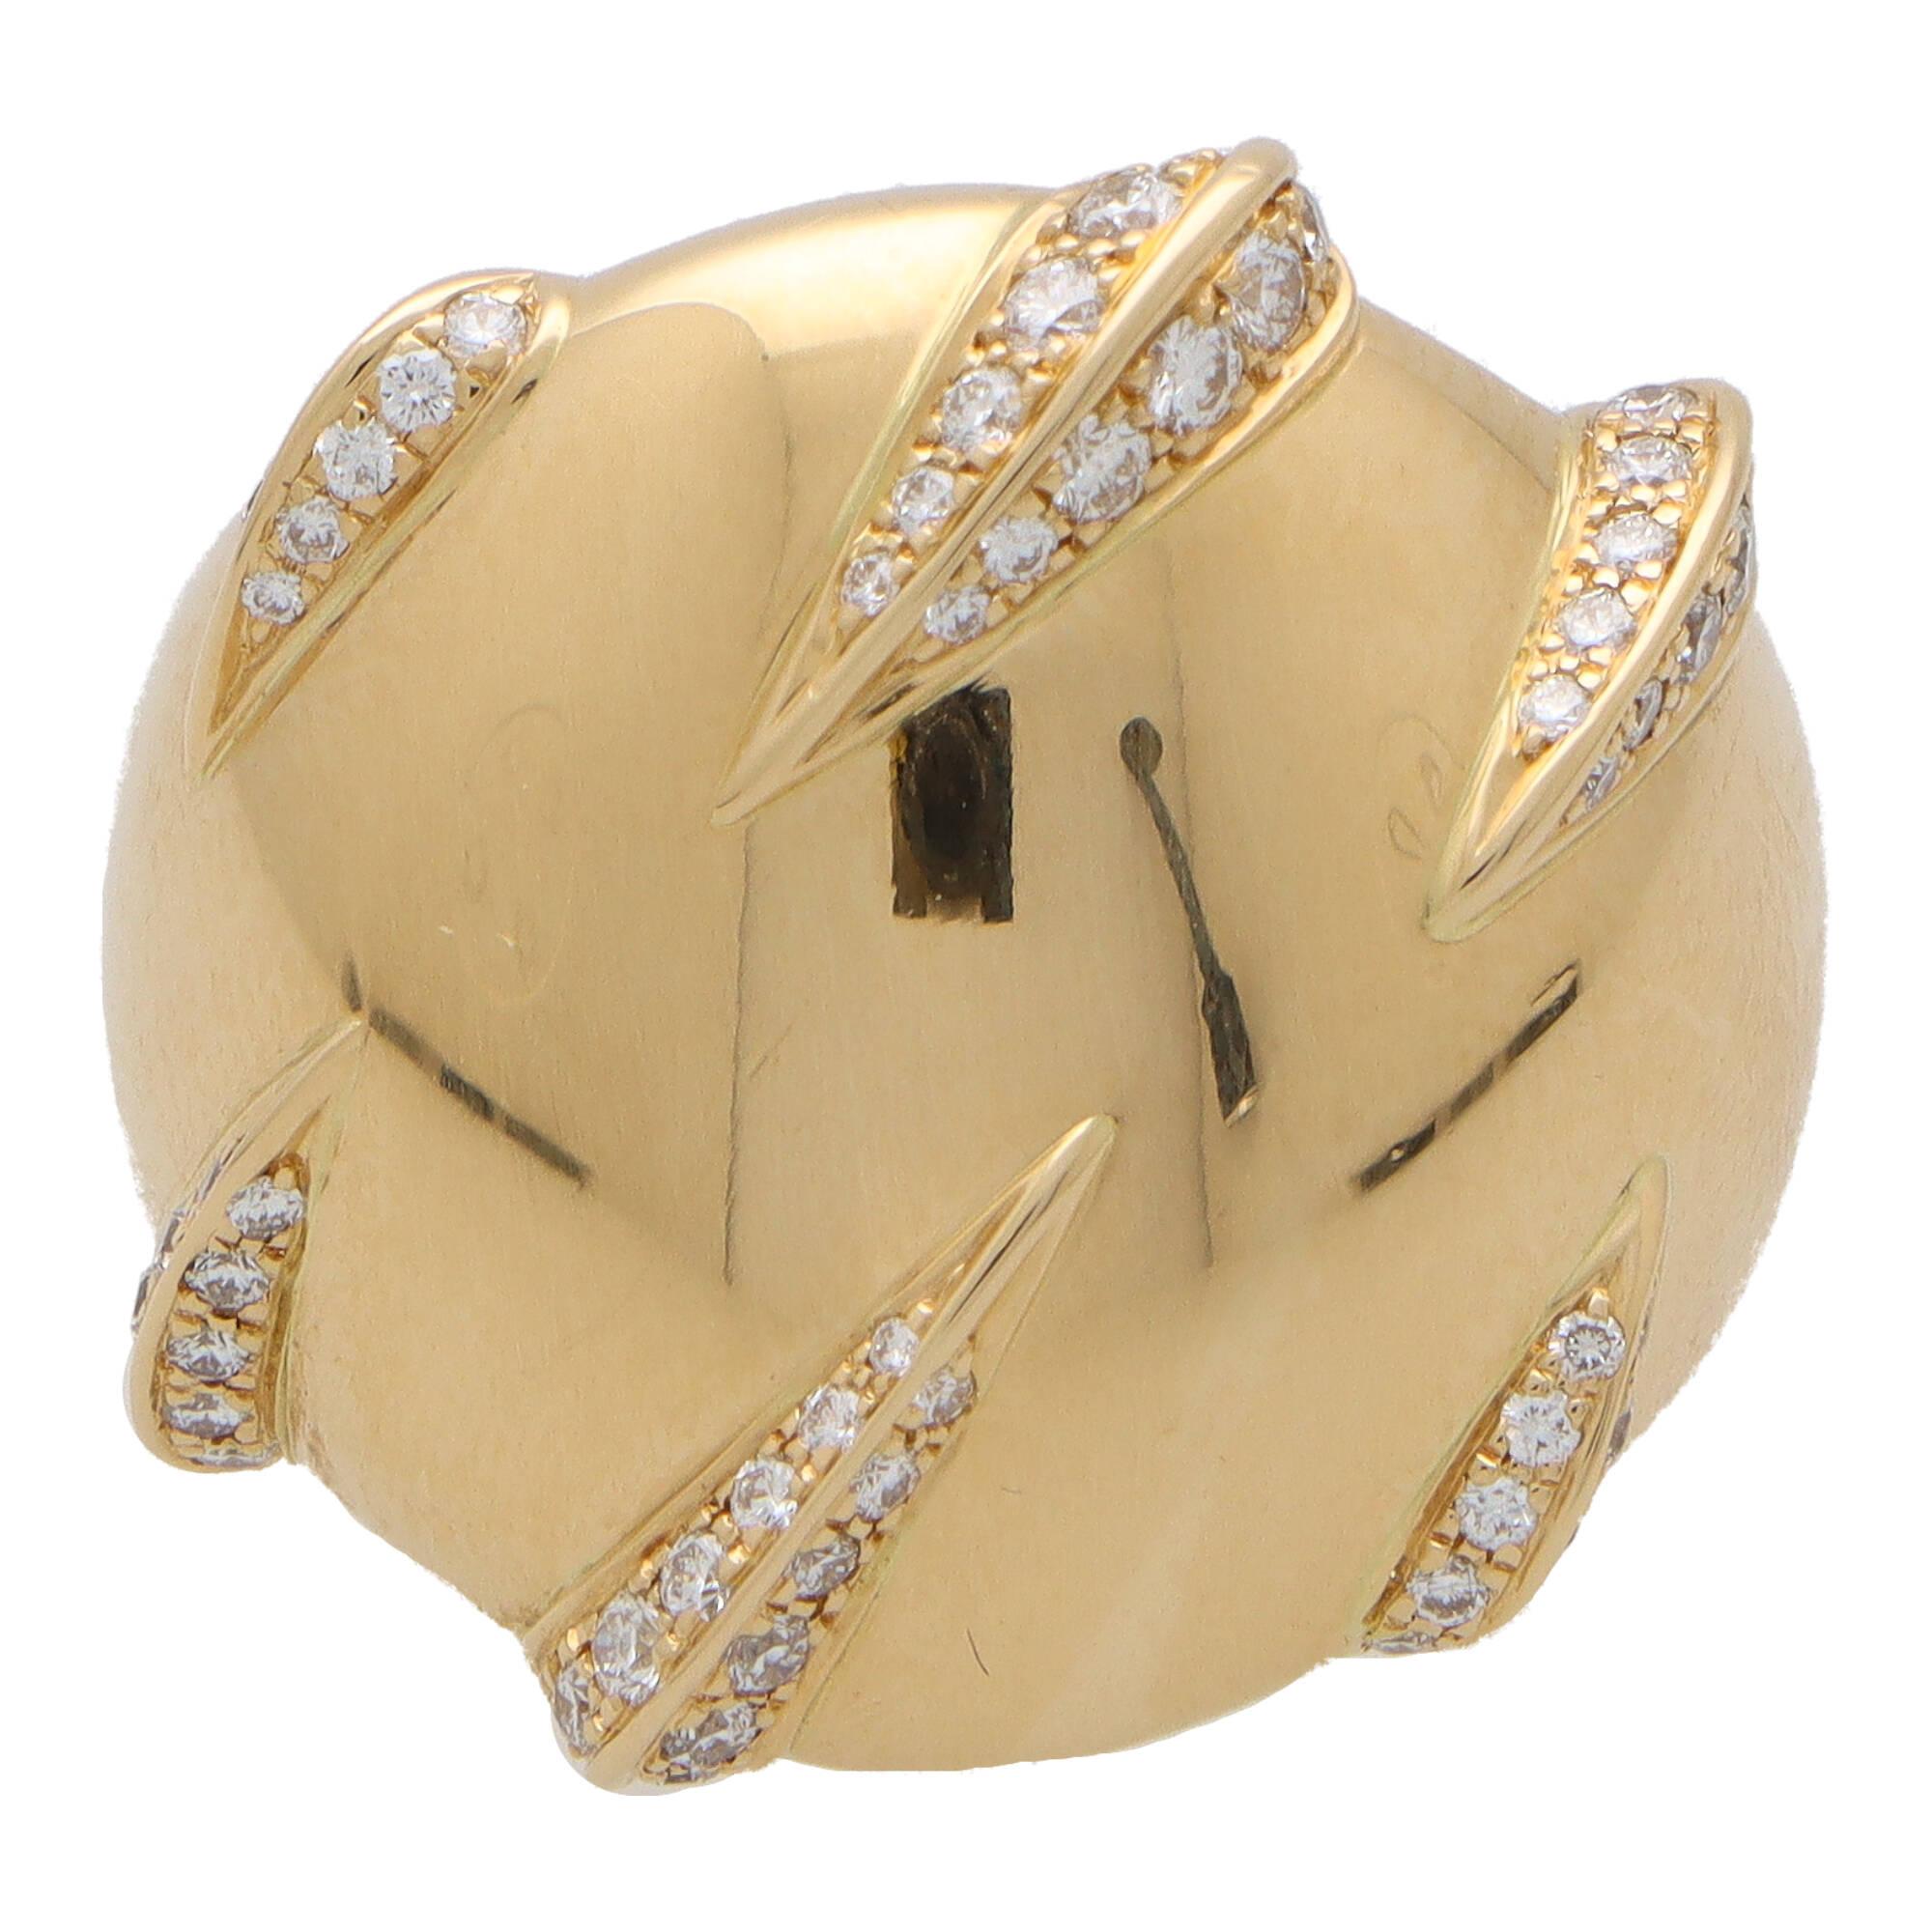 Ein sehr schöner Vintage Cartier 'Panther Claw' Diamantring, in 18k Gelbgold gefasst.

Dieses einzigartig aussehende Stück besteht aus einem großen kreisförmigen Motiv, das von sechs Pantherkrallen umgriffen wird. Jede Pantherkralle ist perfekt mit